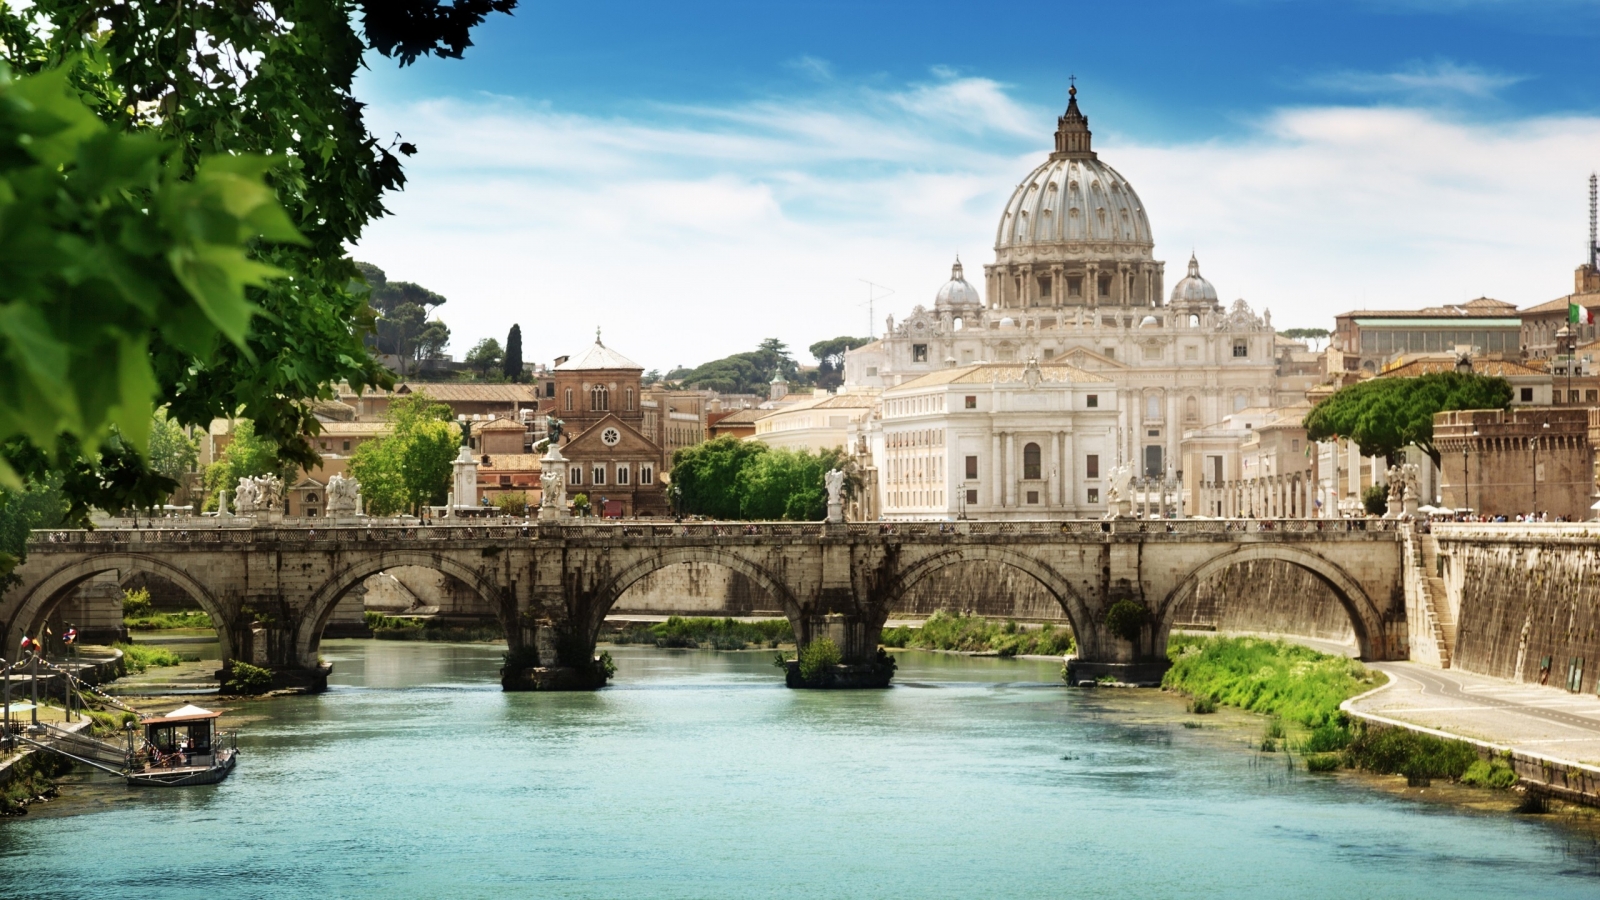 St Angelo Bridge Rome for 1600 x 900 HDTV resolution